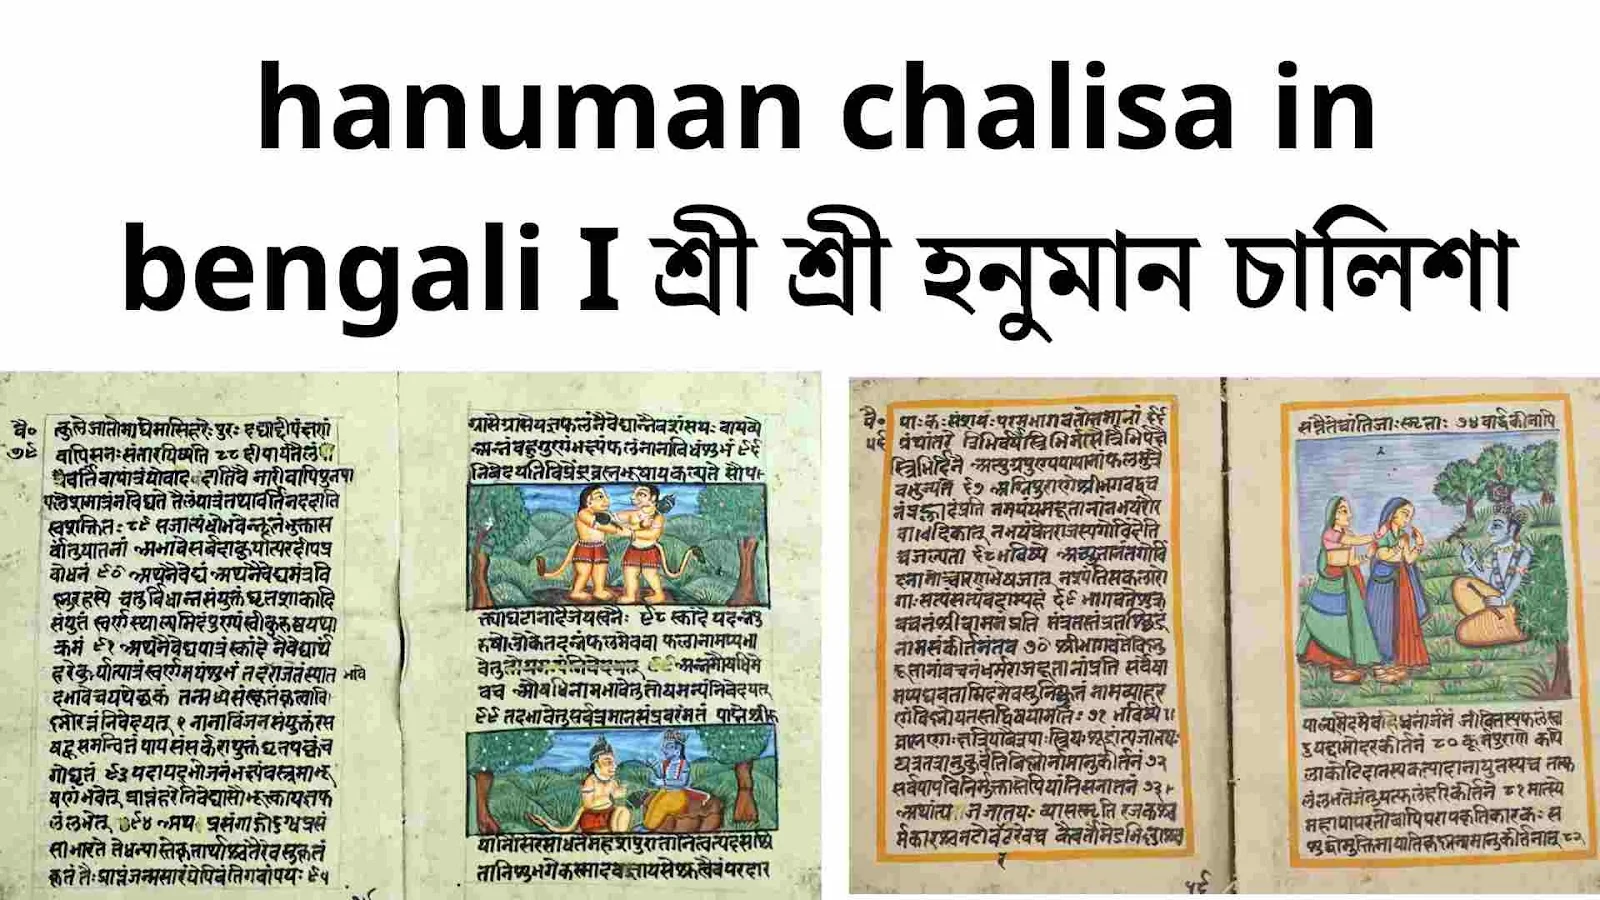 hanuman chalisa, hanuman chalisa lyrics, hanuman chalisa pdf, hanuman chalisa in hindi, hanuman chalisa in bengali, hanuman chalisa hindi, hanuman chalisa in english, hanuman chalisa telugu, hanuman chalisa in kannada, hanuman chalisa bengali, hanuman chalisa lyrics in hindi, hariharan shree hanuman chalisa, shri hanuman chalisa, hanuman chalisa lyrics hindi, hanuman chalisa lyrics in english, hanuman chalisa marathi, hanuman chalisa gujarati, hanuman chalisa lyrics english, hanuman chalisa hindi mein, hanuman chalisa paath, hanuman chalisa kannada, hindi hanuman chalisa book, hanuman chalisa download mp3 dj, hanuman chalisa english, shree hanuman chalisa, hanuman chalisa in telugu, hariharan shree hanuman chalisa lyrics, hanuman chalisa in bengali pdf, hanuman chalisa ringtone, hanuman chalisa lyrics english lyrics, who wrote hanuman chalisa, pdf hanuman chalisa, hanuman chalisa mp3 download, hanuman chalisa mp3, hanuman chalisa odia, hanuman chalisa in marathi, hanuman chalisa english lyrics, hanuman chalisa download, hanuman chalisa bengali pdf, hanuman chalisa in kannada pdf, hanuman chalisa lyrics in bengali, hanuman chalisa image, hindi hanuman chalisa, hanuman chalisa likhit mein, hanuman chalisa in hindi lyrics, hanuman chalisa analysis, hanuman chalisa telugu pdf, hanuman chalisa ka paath, hanuman chalisa lyrics in kannada, hanuman chalisa assamese, hanuman chalisa download mp3, hanuman chalisa in hindi pdf, hanuman chalisa lyrics in hindi pdf, hanuman chalisa song download mp3 dj, hanuman chalisa lyrics telugu, hanuman chalisa lyrics bengali, hanuman chalisa lyrics in tamil, hanuman chalisa hanuman chalisa, hanuman chalisa written, hanuman chalisa likha hua, lyrics of hanuman chalisa, shri hanuman chalisa lyrics, hanuman chalisa song, hanuman chalisa meaning in hindi, shree hanuman chalisa lyrics, hanuman chalisa likhit, hanuman chalisa gujarati pdf, hanuman chalisa pdf gujarati, hanuman chalisa hindi lyrics, hanuman chalisa meaning, hanuman chalisa bangla, jai hanuman chalisa, hanuman chalisa gulshan kumar, hanuman chalisa kannada pdf, hanuman chalisa bengali lyrics, hanuman chalisa fast, hanuman chalisa in assamese, hanuman chalisa photo, hanuman chalisa in bengali lyrics, hanuman chalisa download lyrics, hanuman chalisa lyrics in gujarati, hanuman chalisa my mp3 song download pagalworld, hanuman chalisa likhi hui, full hanuman chalisa, hanuman chalisa padhne ke fayde, hanuman chalisa aarti, hanuman chalisa new version 2023 mp3 download, hanuman chalisa in english lyrics, hanuman chalisa lyrics download, hanuman chalisa benefits, hanuman chalisa chaupai, hanuman chalisa kisne likhi, hanuman chalisa lyrics english hindi, hanuman chalisa with meaning, hanuman chalisa meaning in english, hanuman chalisa path, hanuman chalisa writer, hanuman chalisa download hindi, hanuman chalisa lyrics gujarati,